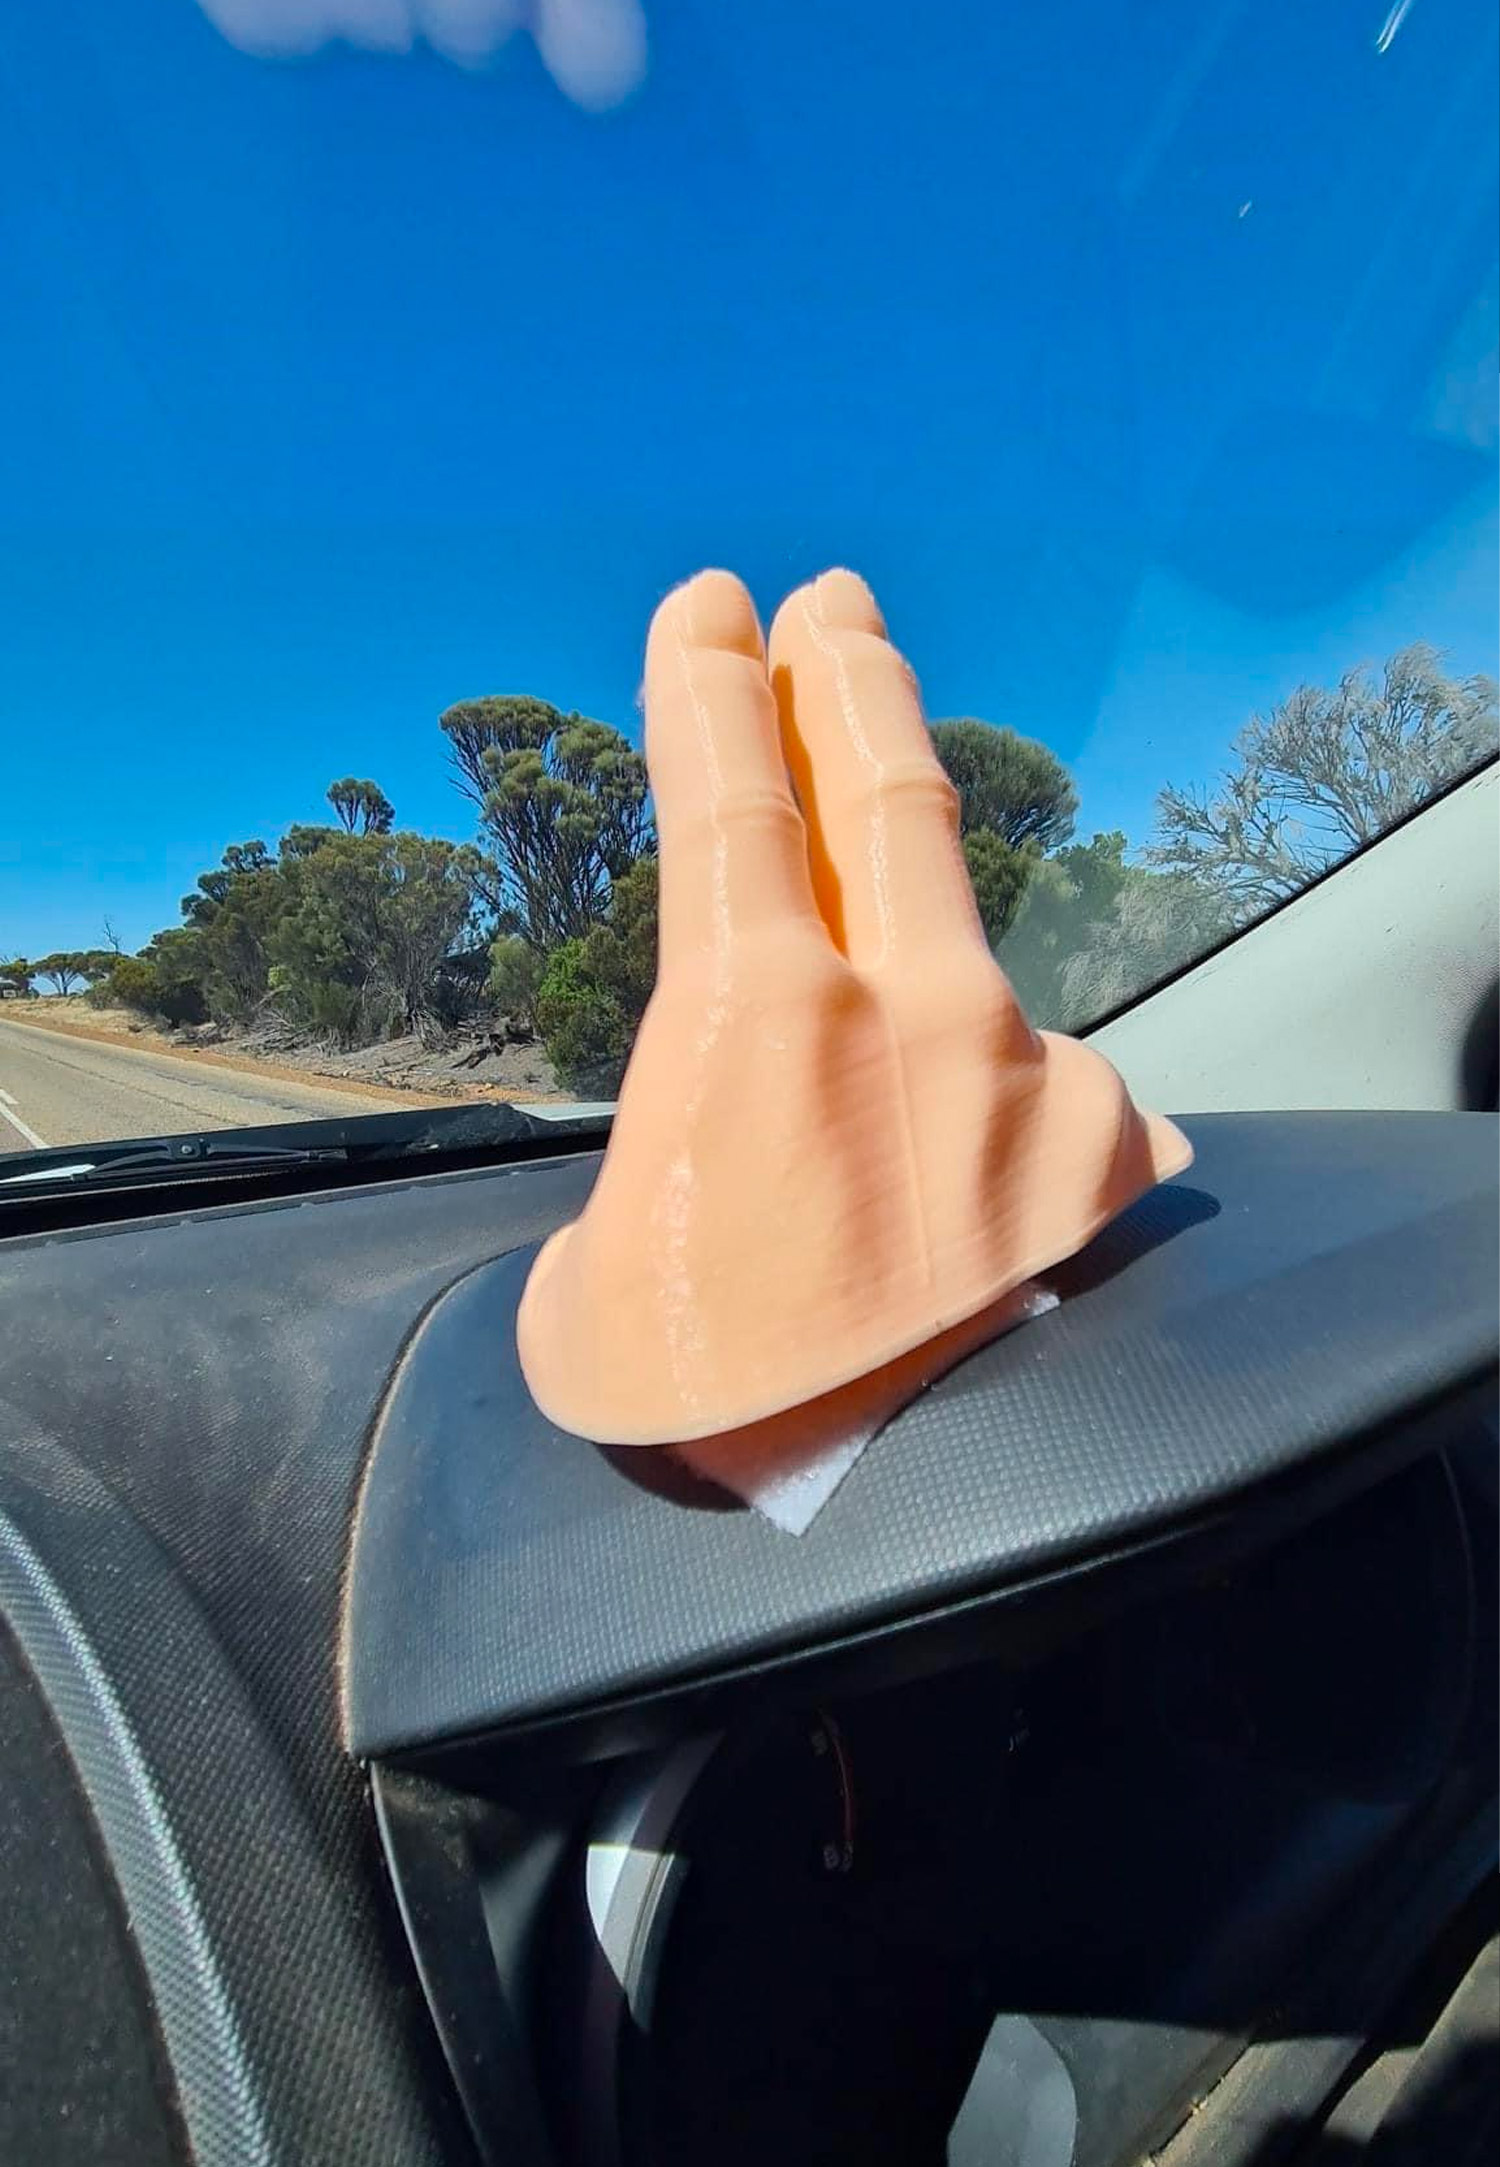 2-Finger Car Wave Dashboard Mount - Waving Hand Dashboard